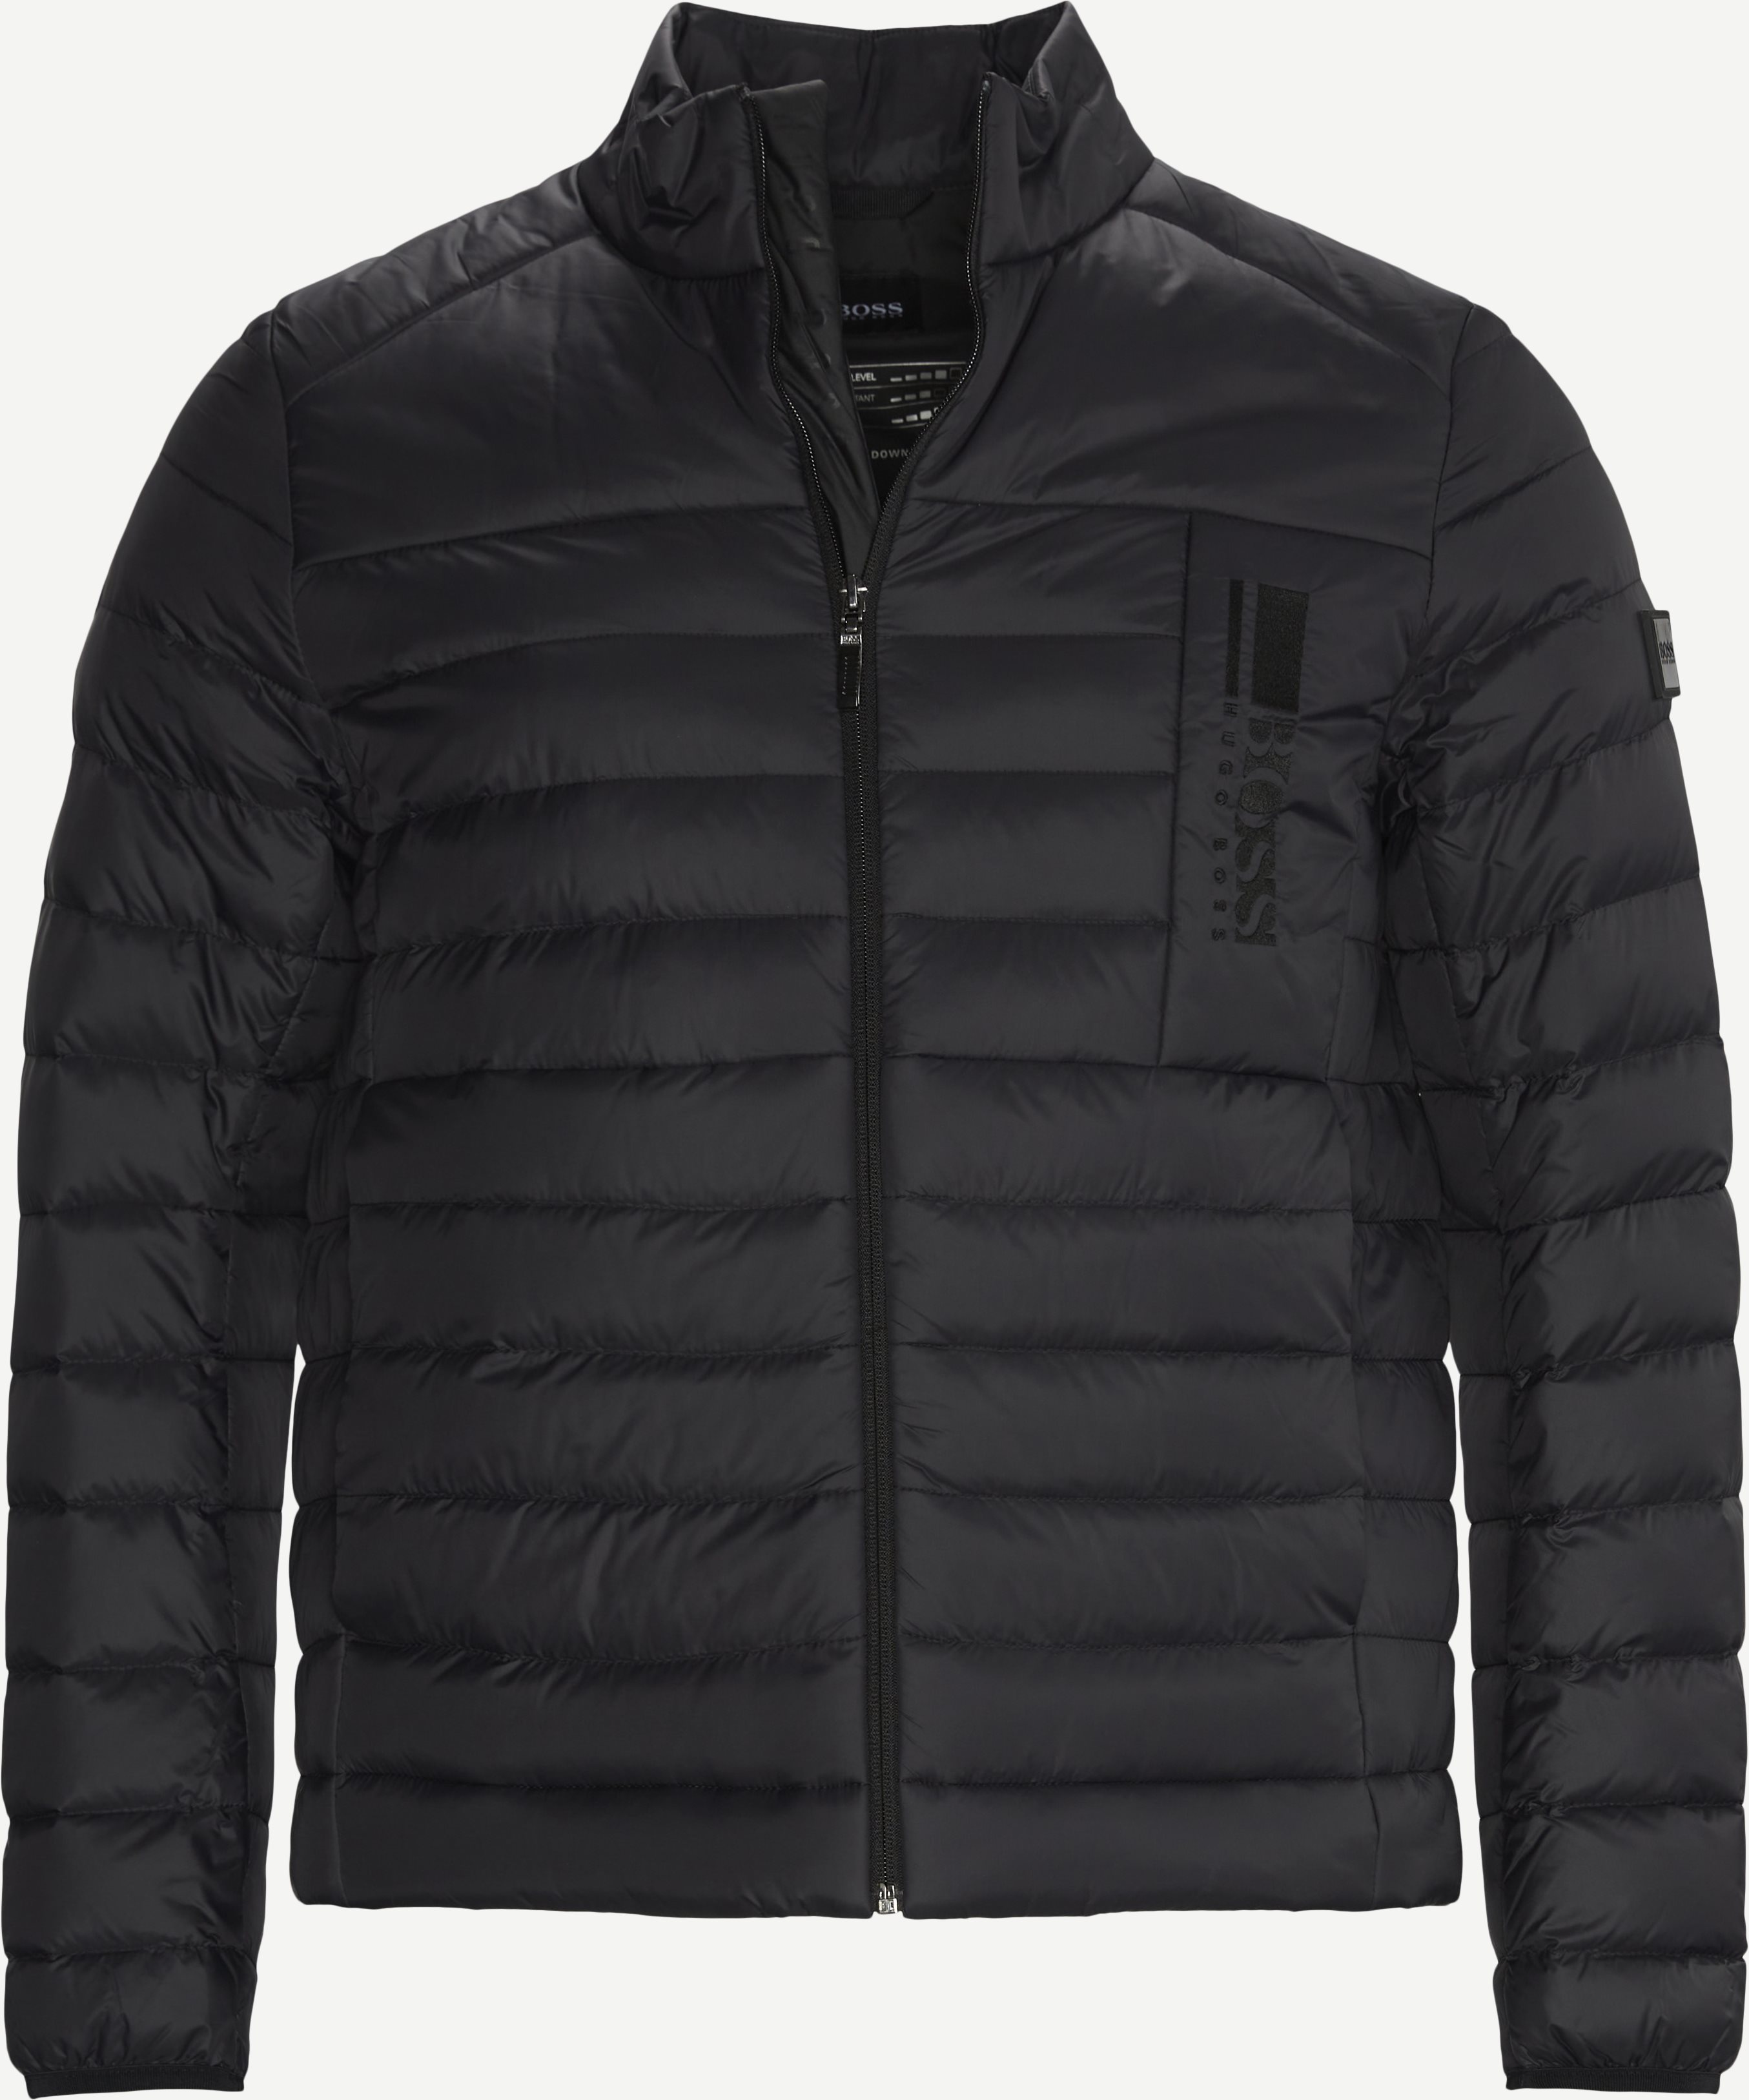 Basalt Jacket - Jackets - Regular fit - Black